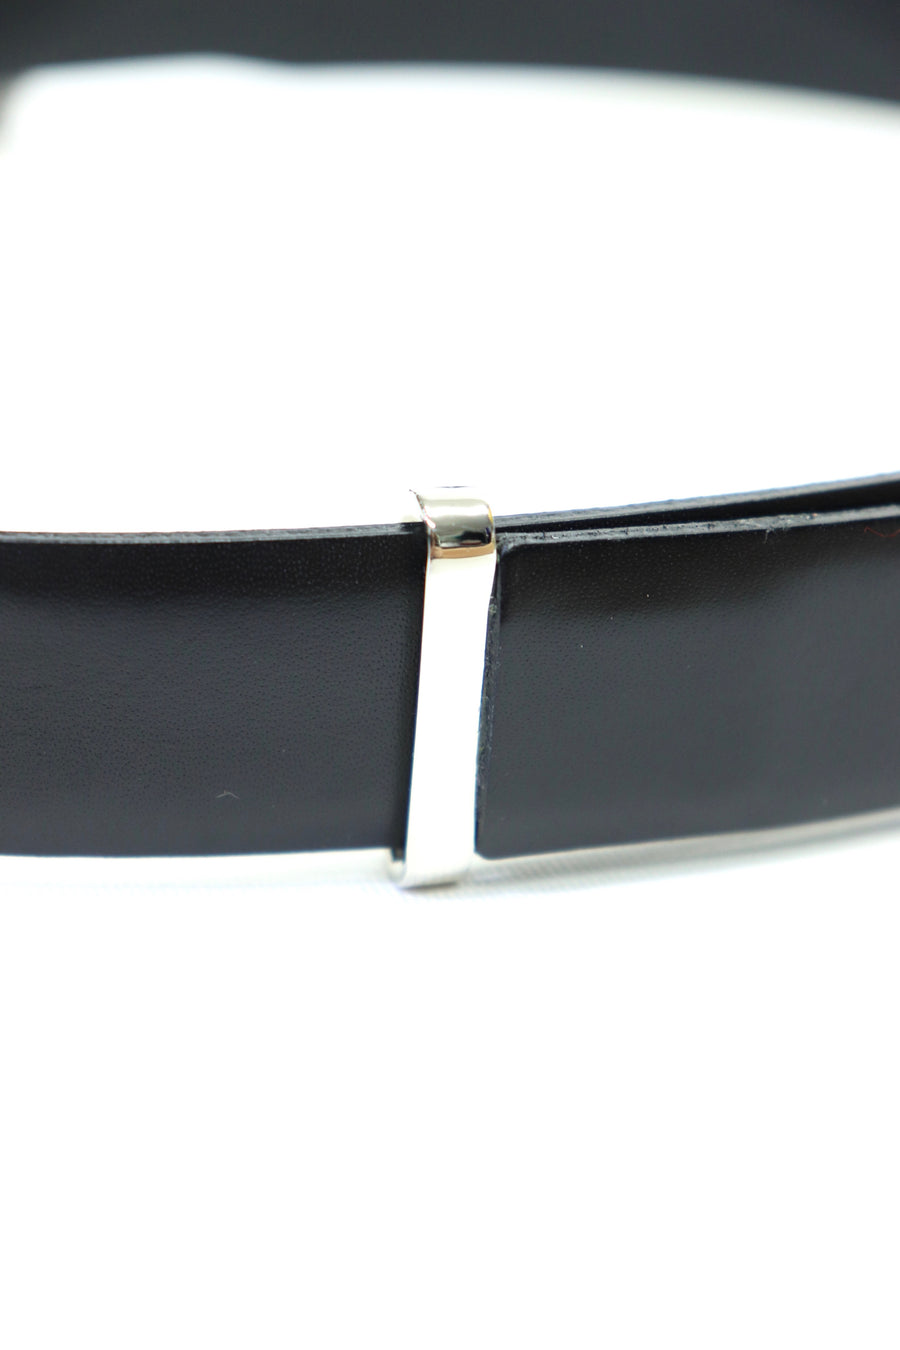 TOGA VIRILIS  Metal buckle belt(BLACK)